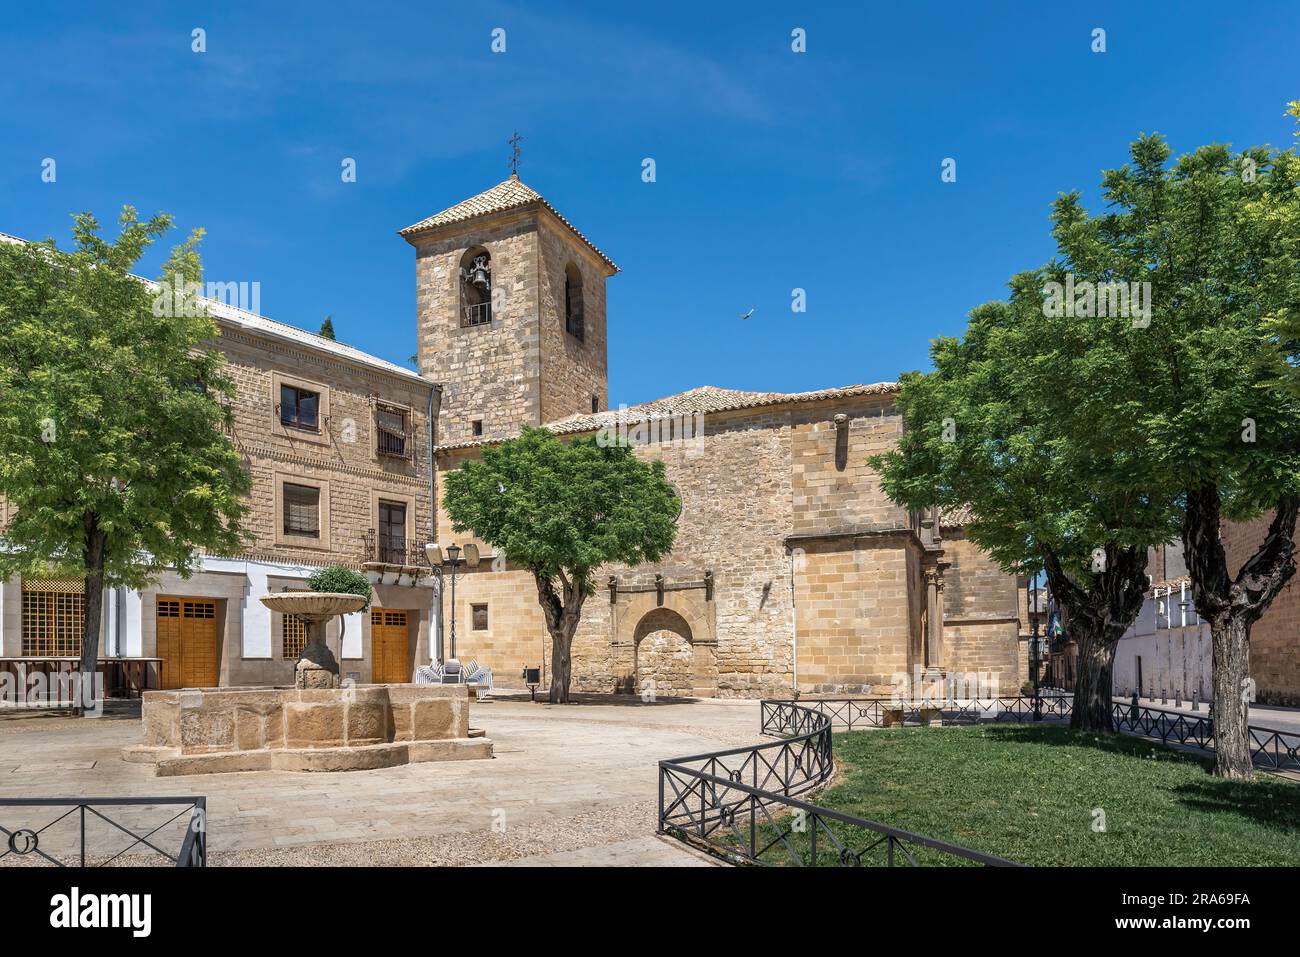 Chiesa di San Pietro in Plaza de San Pedro - Ubeda, Jaen, Spagna Foto Stock